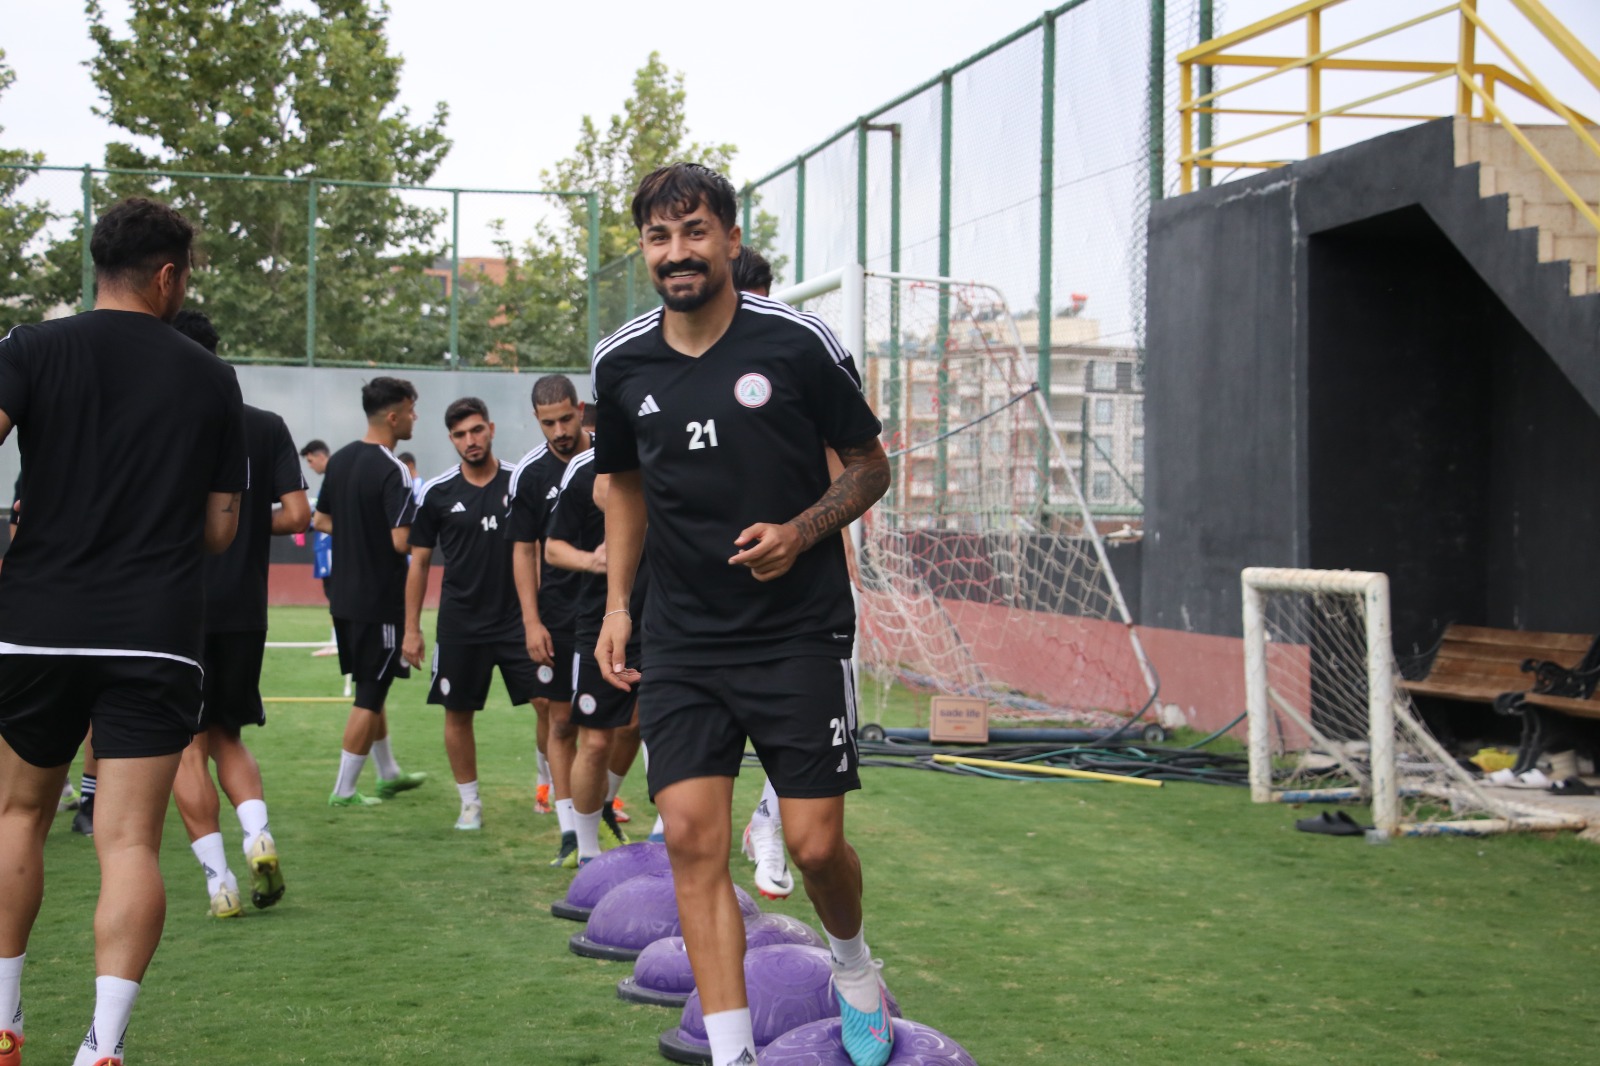 Teknik direktör Durmuş, Fatsaspor maçını değerlendirdi